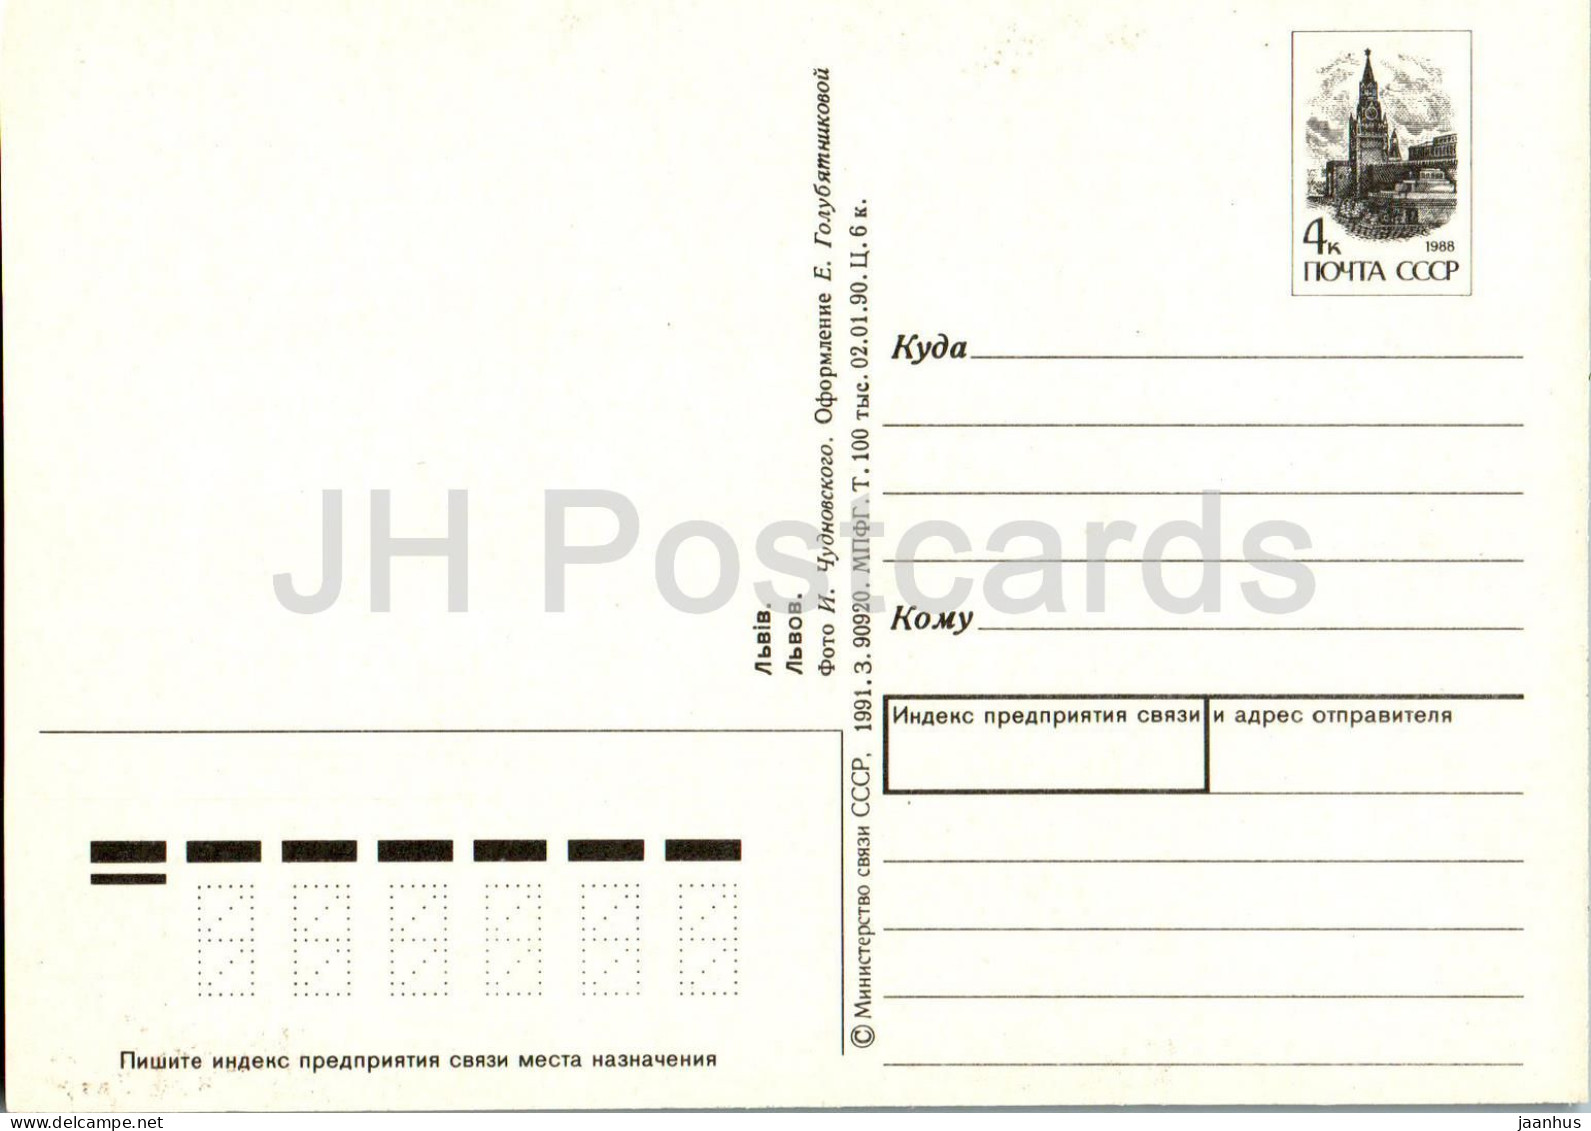 Lviv - Pharmacy Museum - Tortoise - Postal Stationery - 1991 - Ukraine USSR - Unused - Ukraine